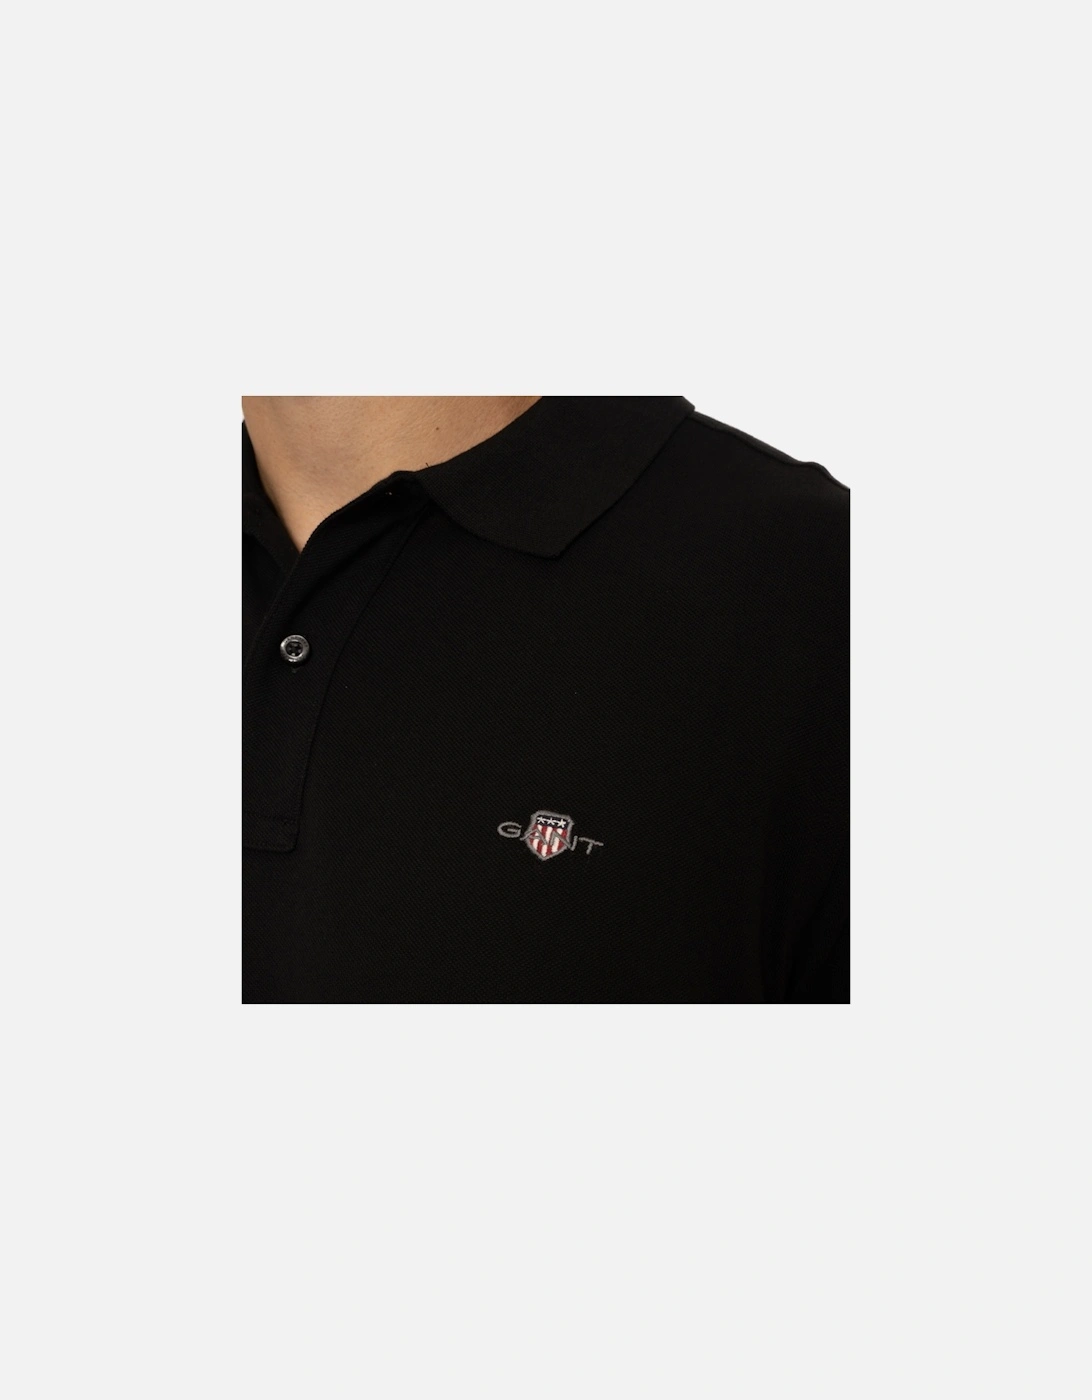 Mens Regular Shield S/S Pique Polo Shirt (Black)